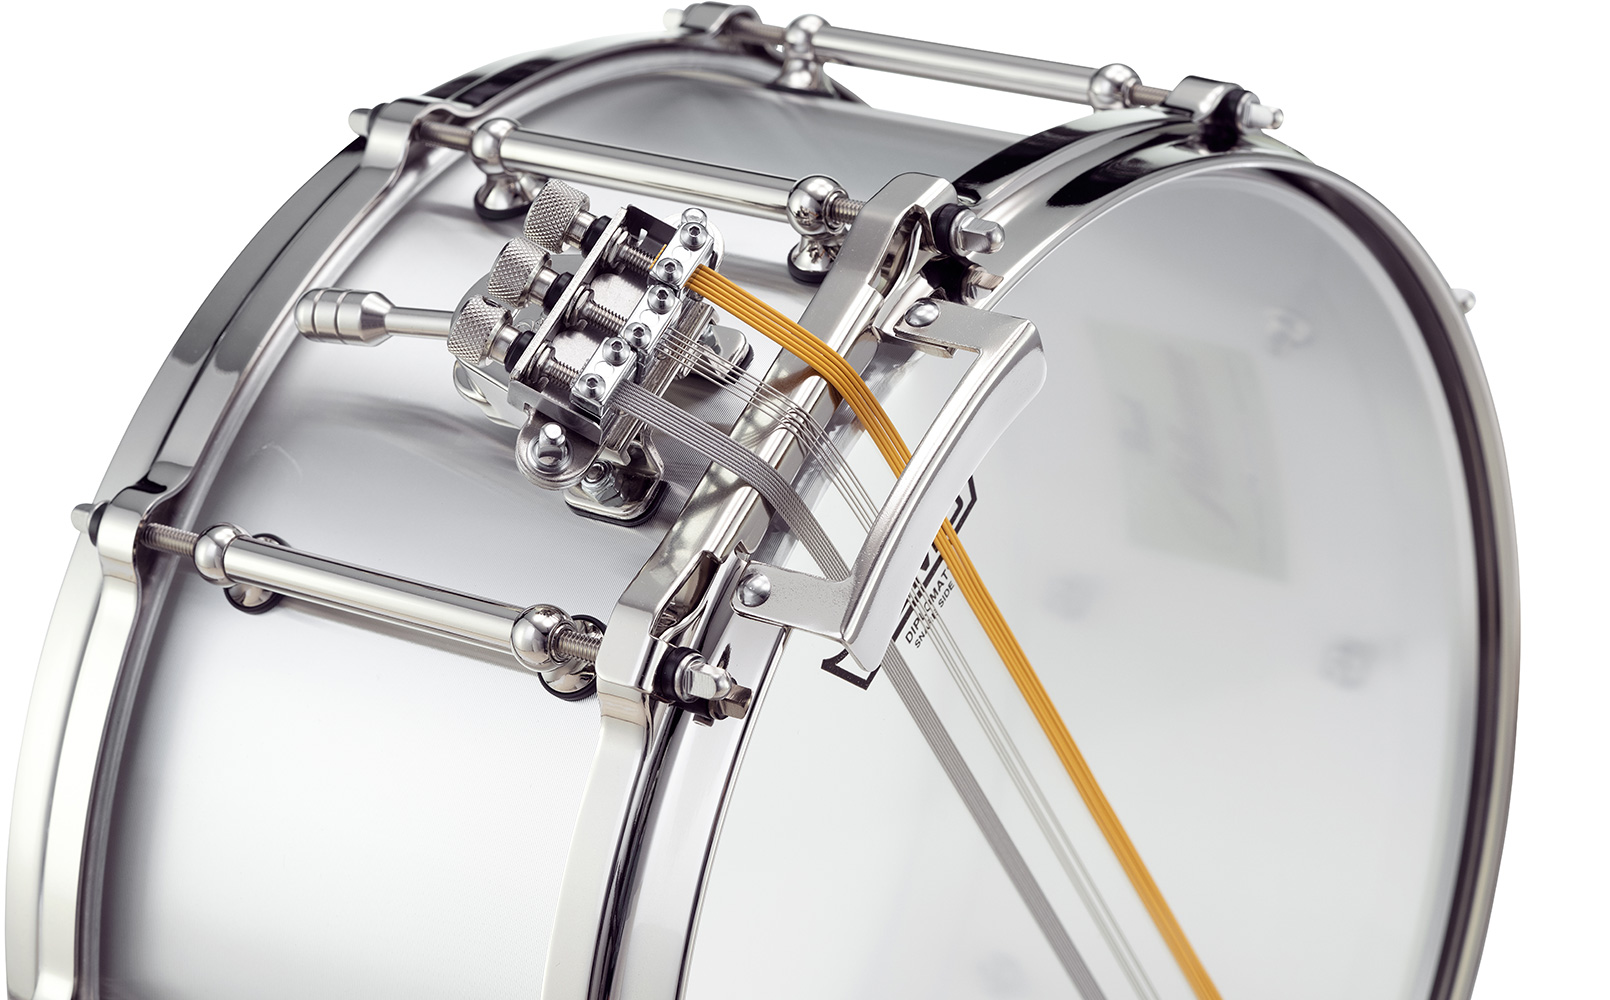 Pearl 14x5 Philharmonic Snare Drum Aluminium